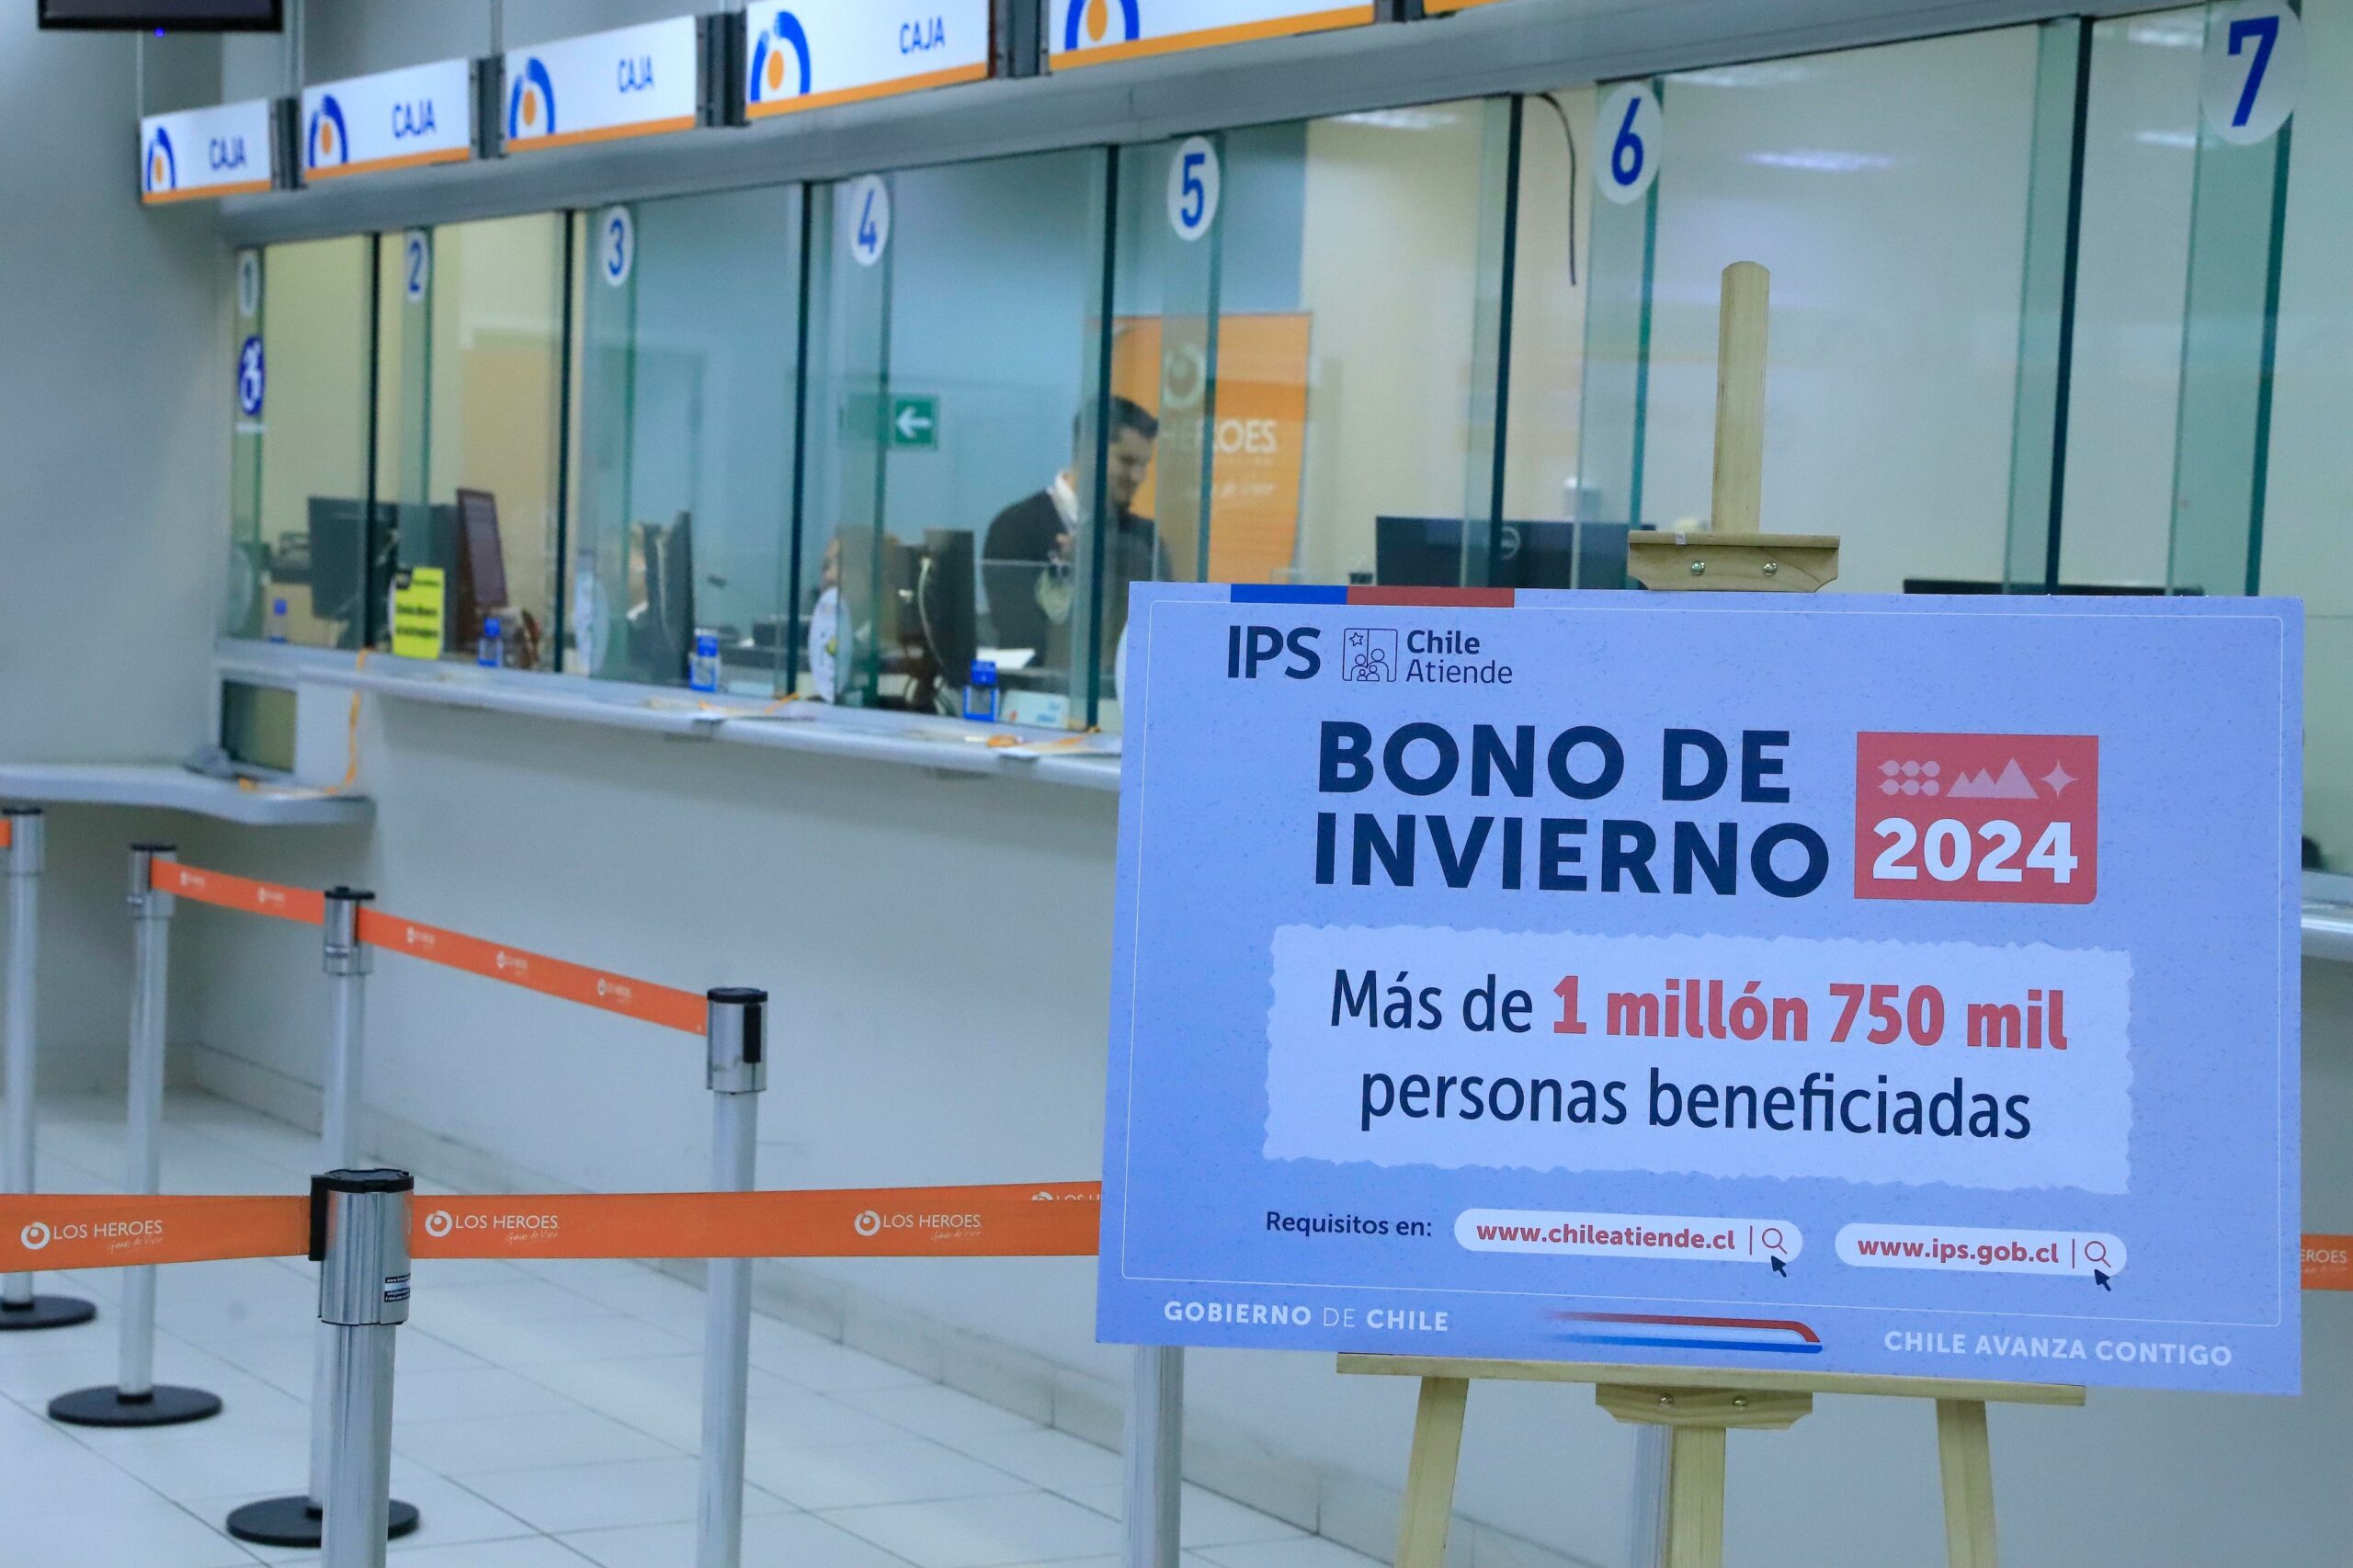 Más de 82 mil personas pensionadas recibirán el Bono de Invierno 2024 en la región de Coquimbo